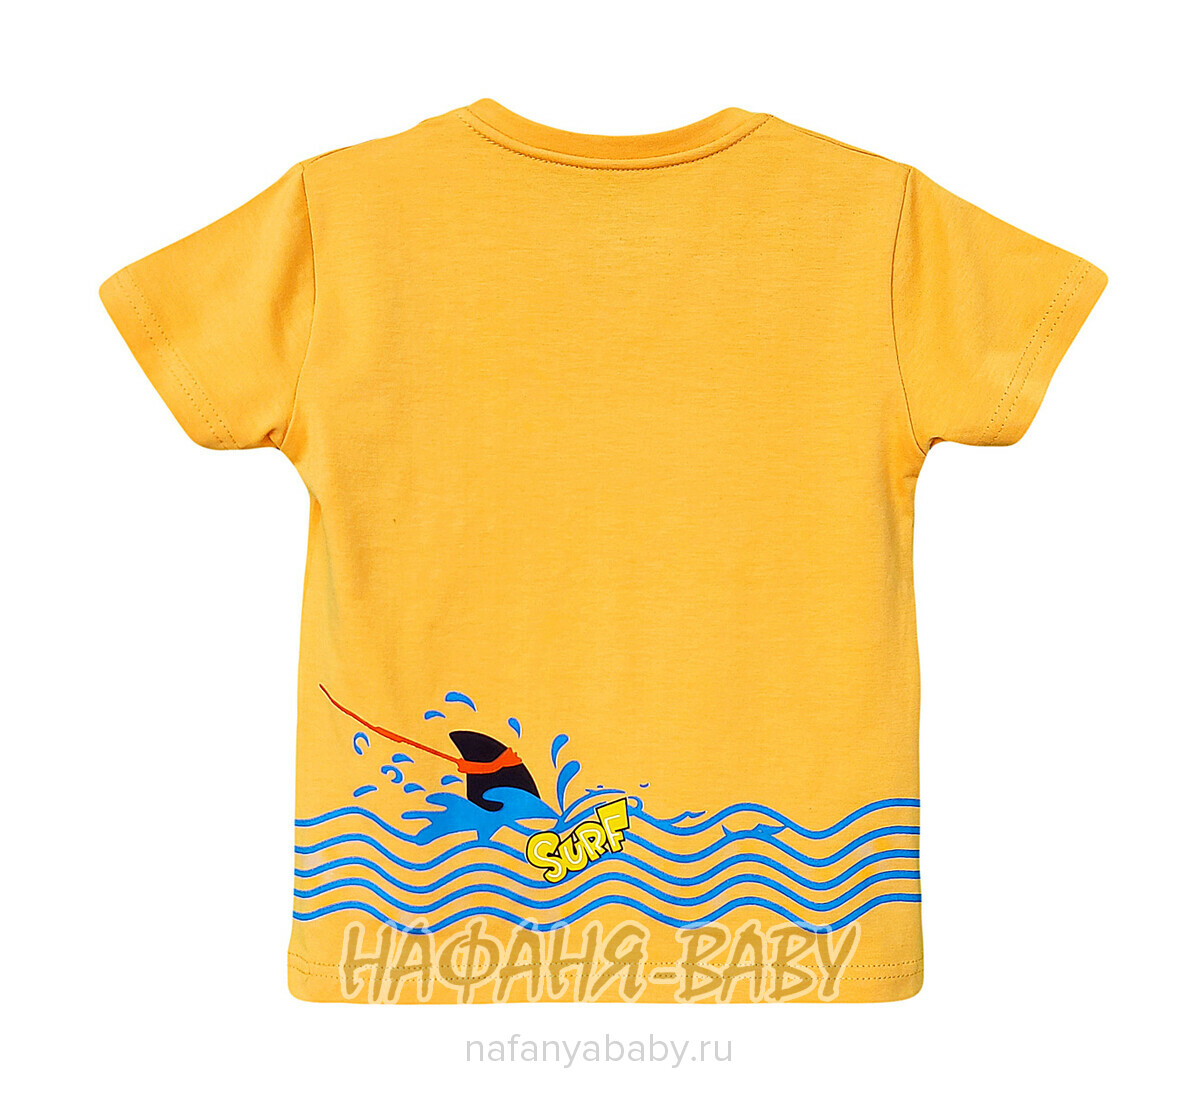 Детская футболка PATIKA арт. 7225, 1-4 года, цвет оранжевый, оптом Турция